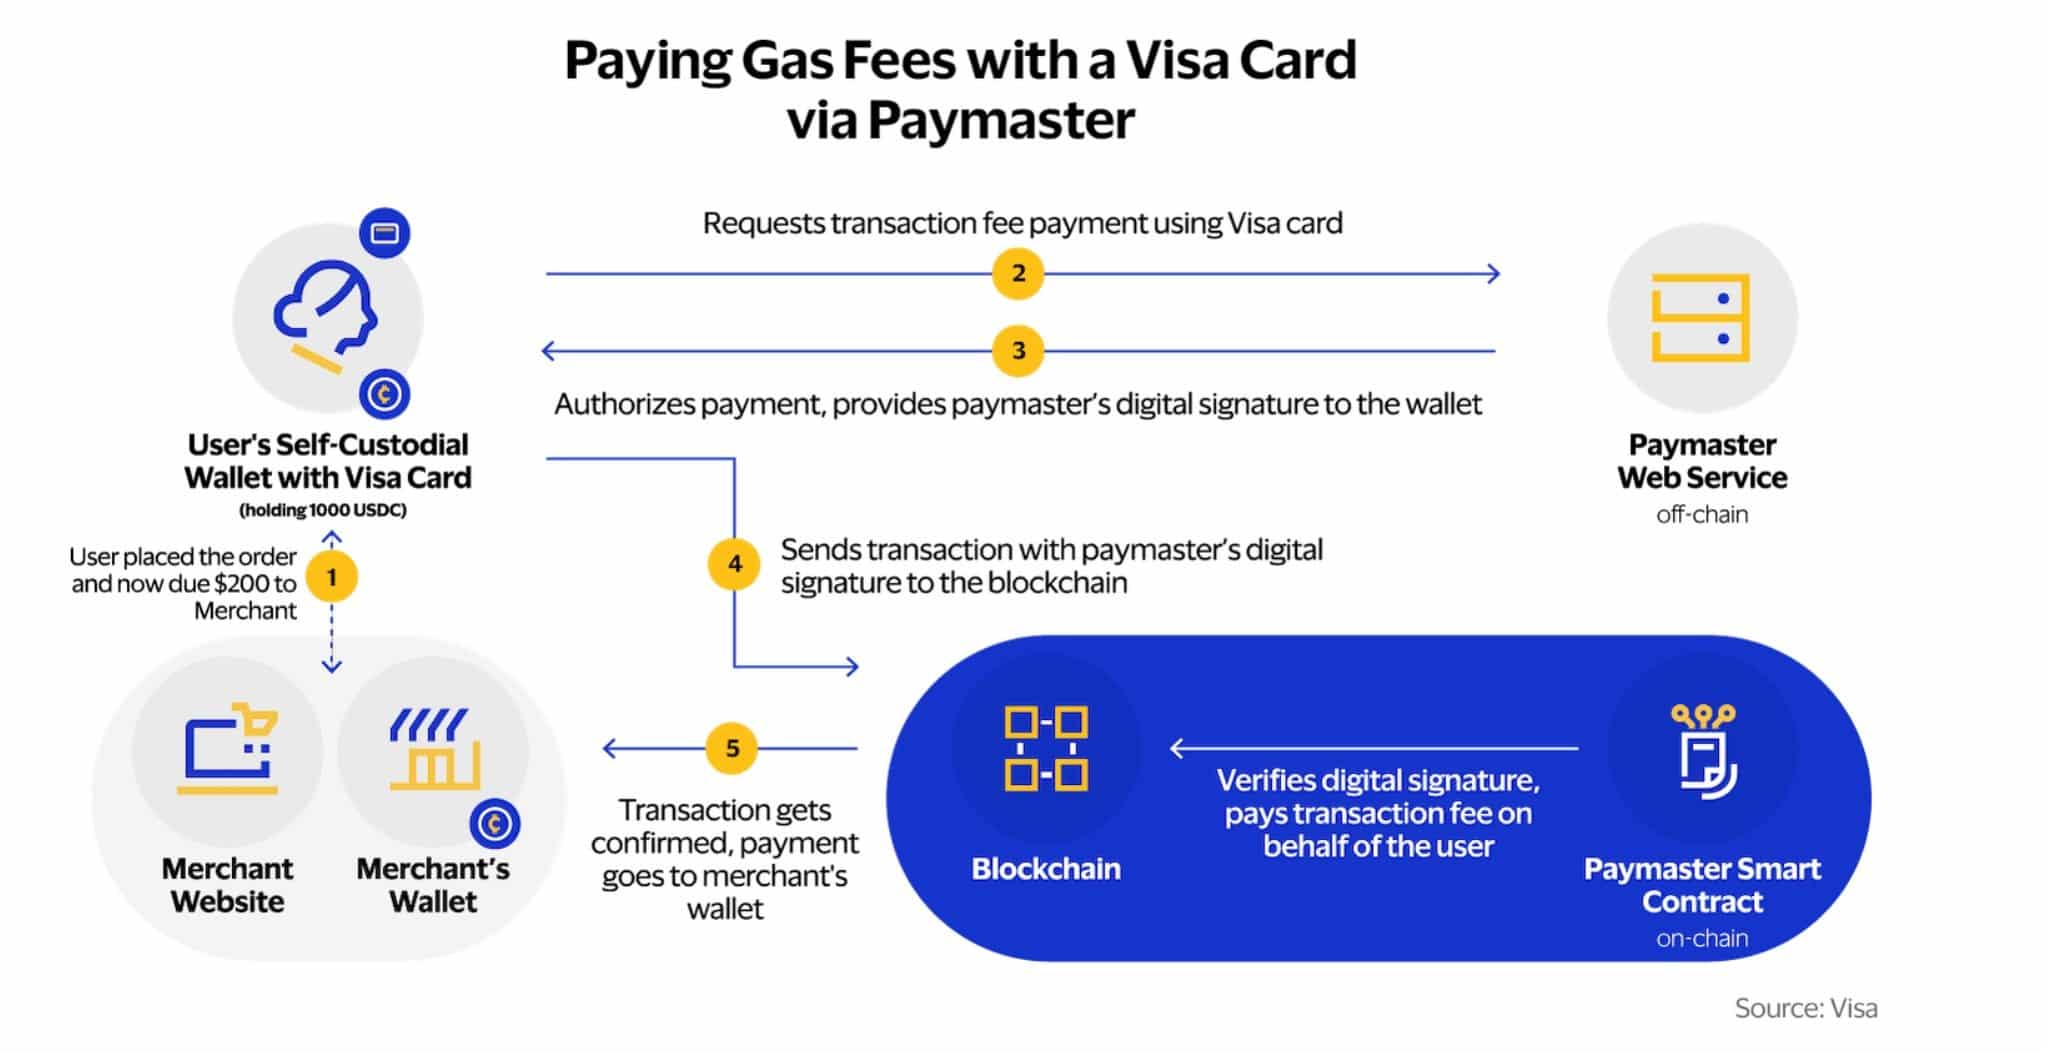 使用 Visa Paymaster 解决方案的交易示意图